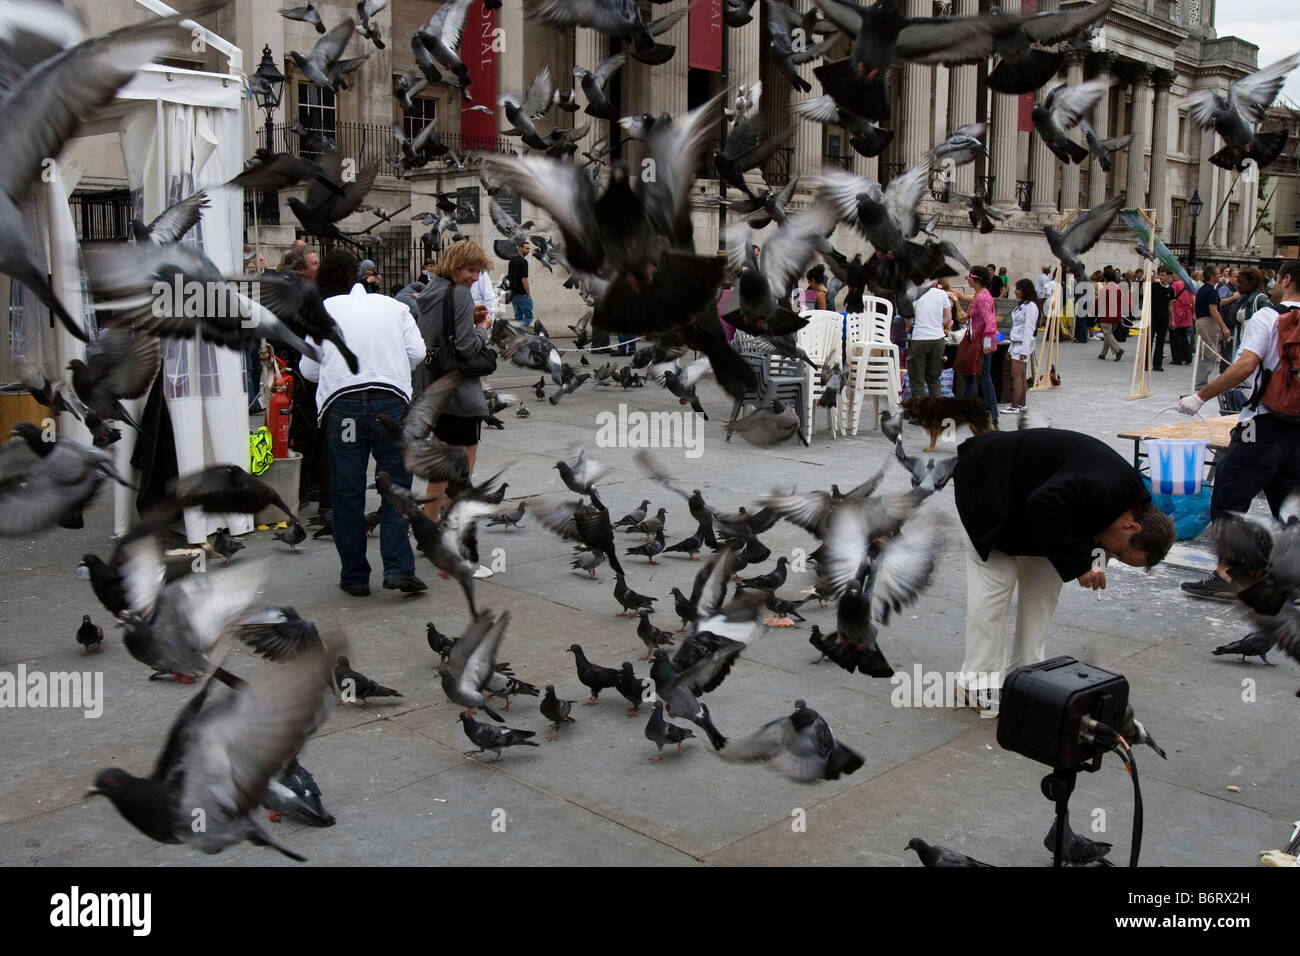 Pigeons in Trafalgar Square take flight. Stock Photo